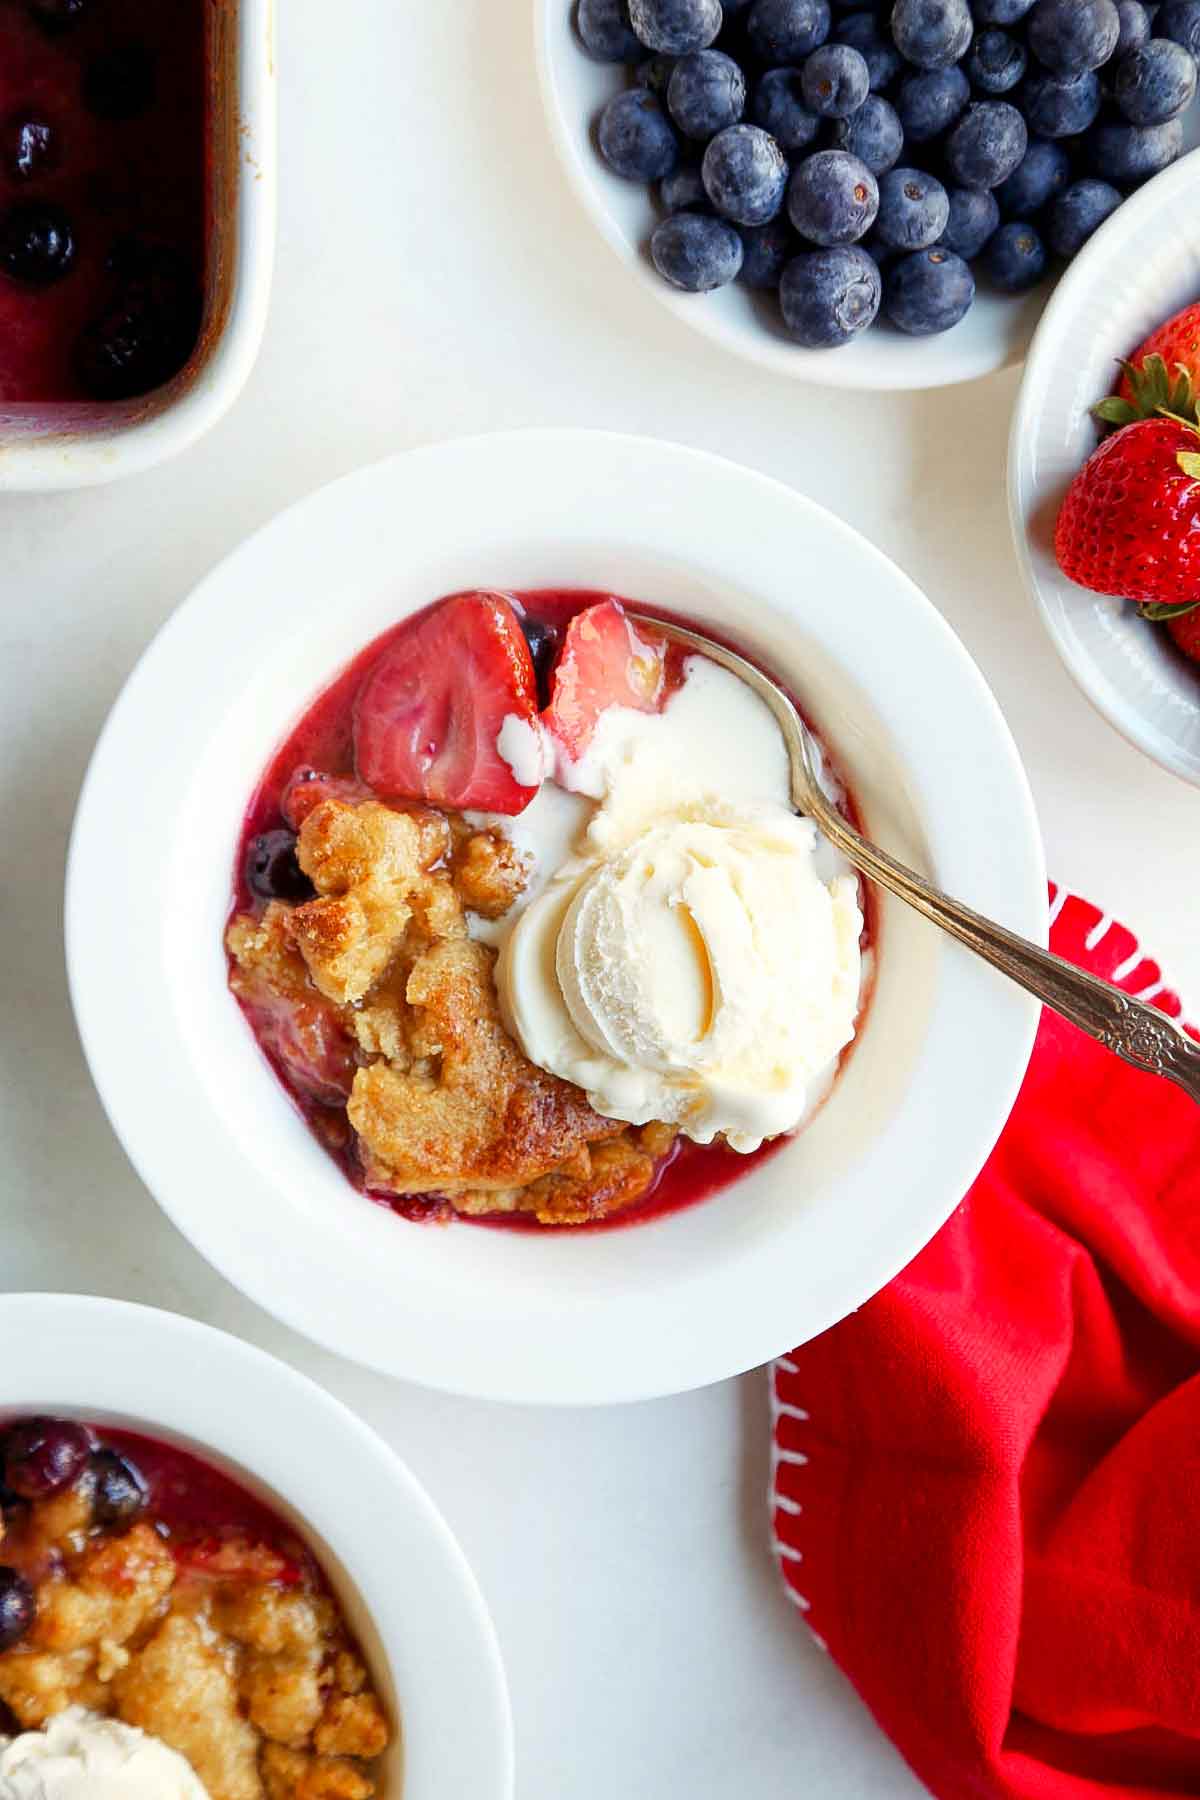 Två vita skålar fyllda med jordgubbsblåbärsskomakare och toppade med glass.